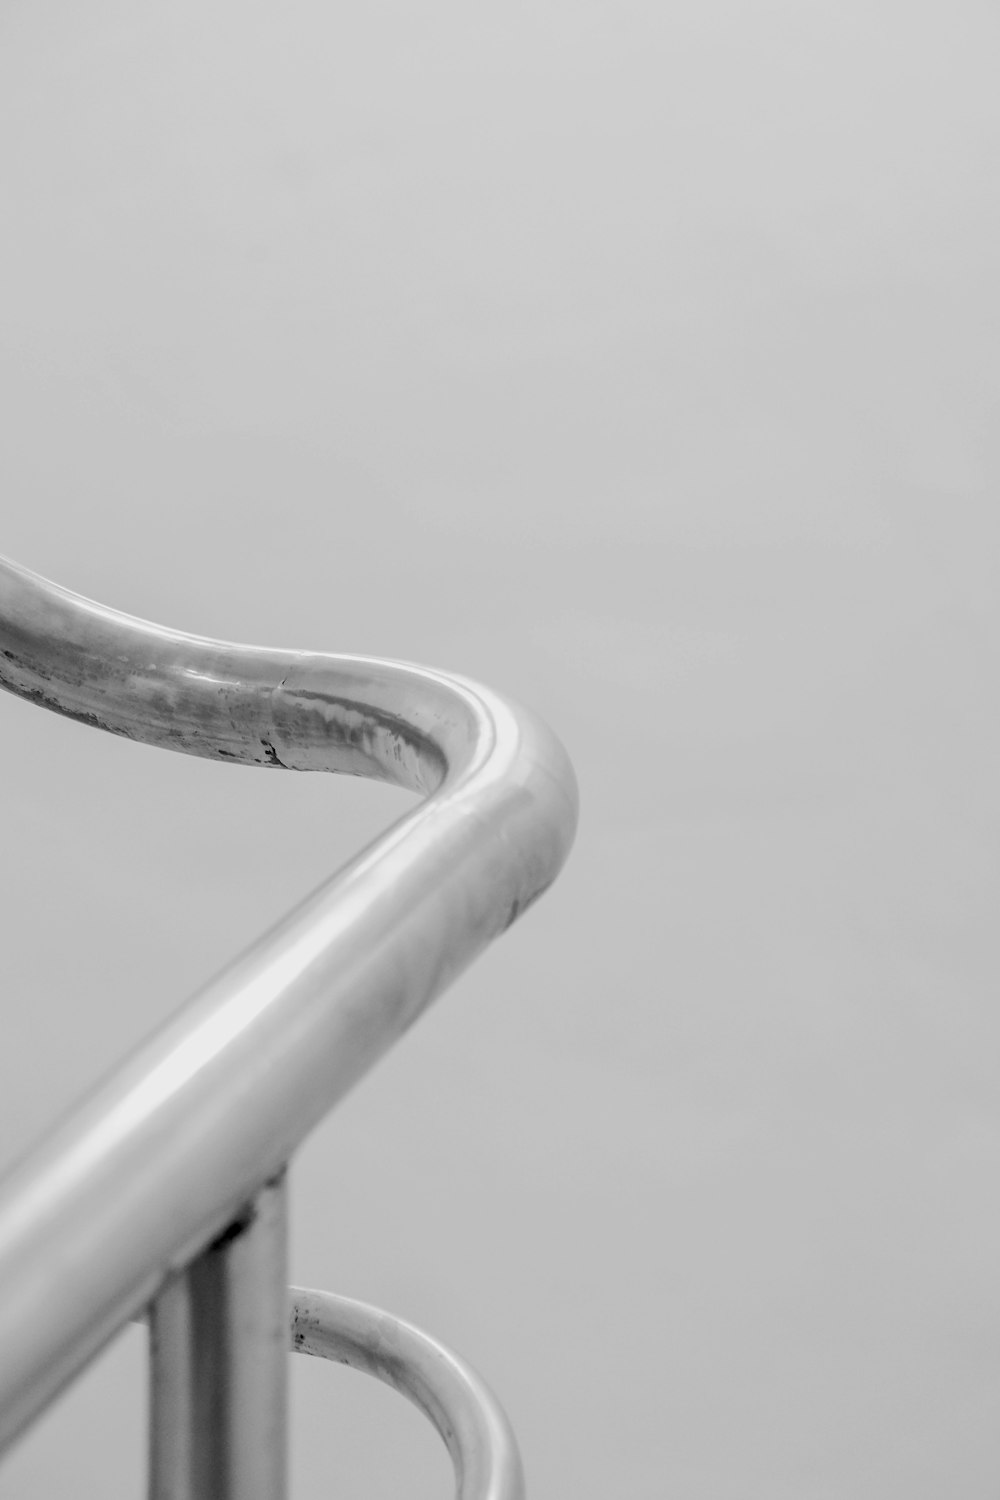 Foto de primer plano de barandillas curvas de acero inoxidable